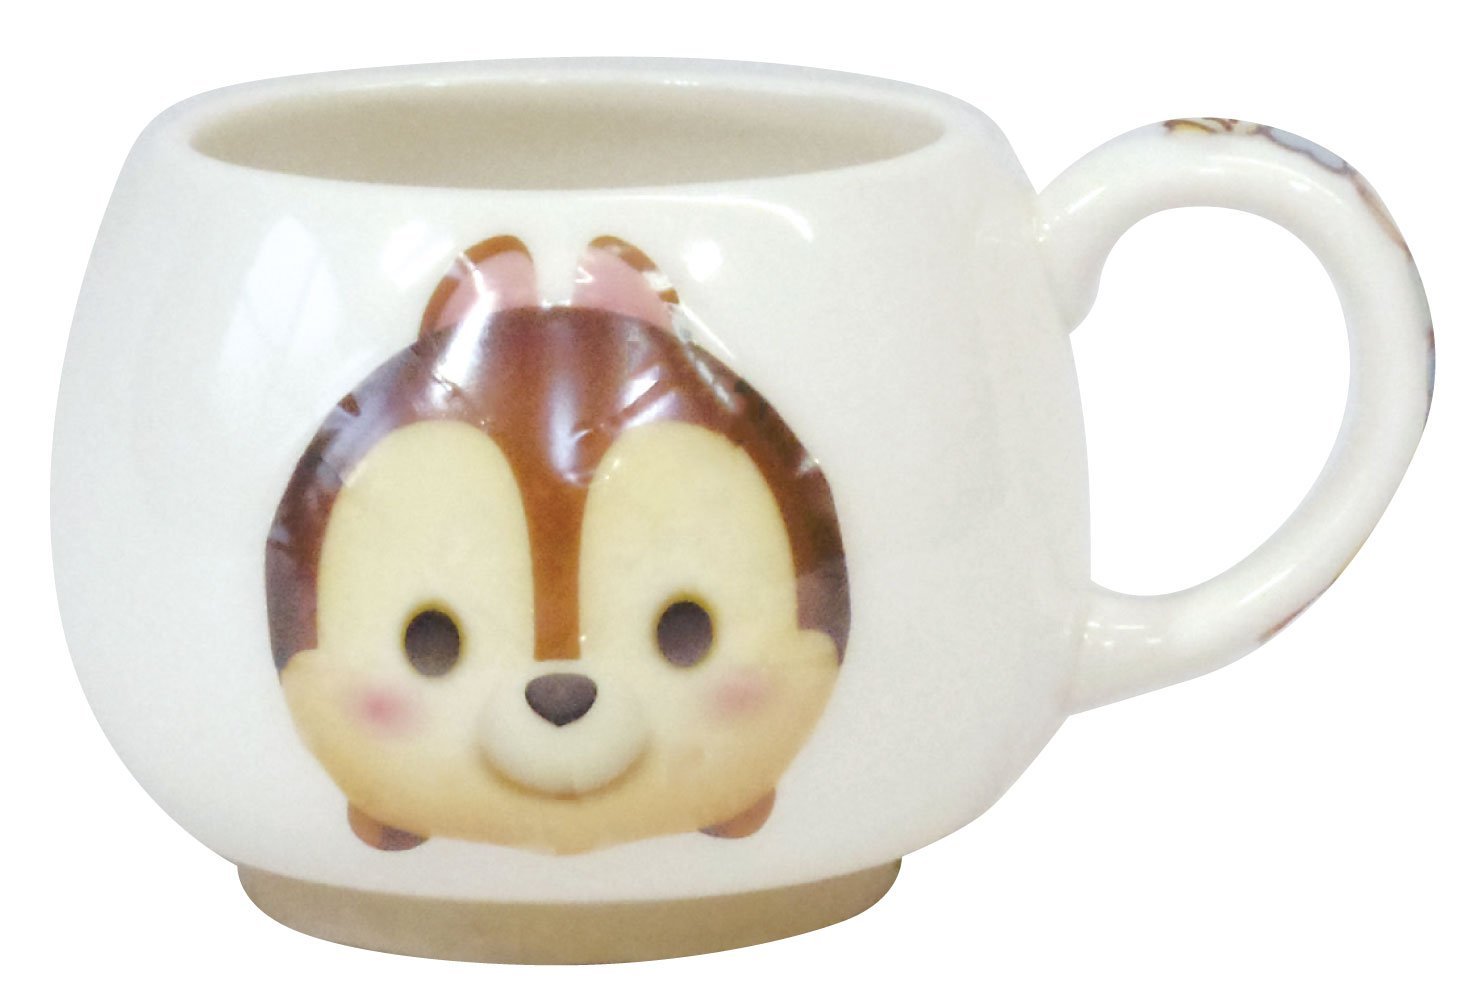 【真愛日本】15061800009 茲姆杯-立體奇奇 迪士尼 花栗鼠 奇奇蒂蒂 松鼠 杯子 茶杯 馬克杯 正品 限量 預購